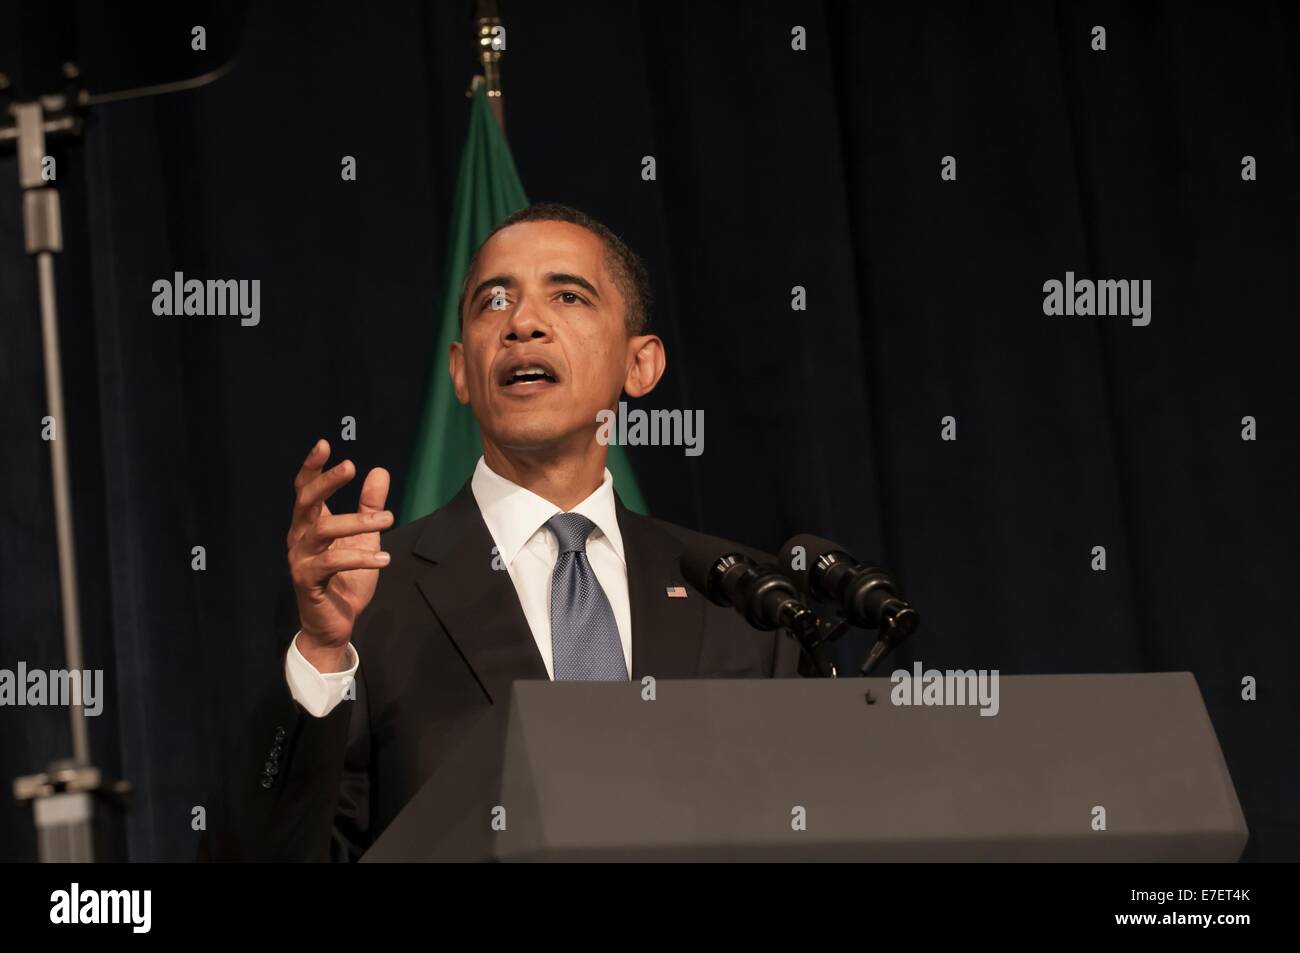 El presidente Barack Obama dando un discurso en un evento para recaudar fondos para la senadora Patty Murray en Seattle, WA. Foto de stock